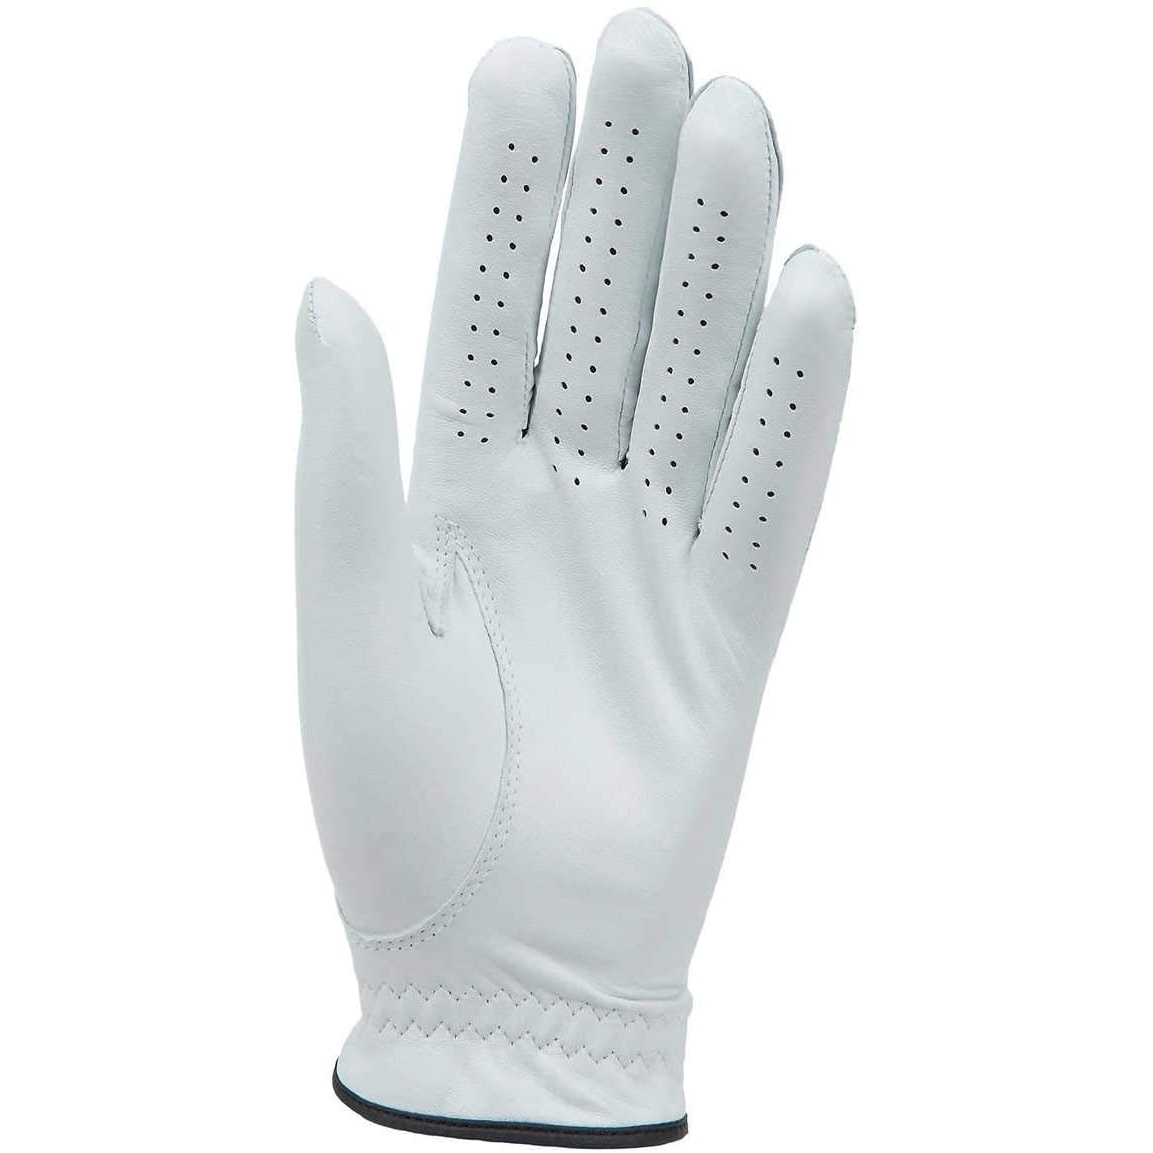 Kirkland Signature Golf Gloves Premium Cabretta Leather, Medium (4 Count)